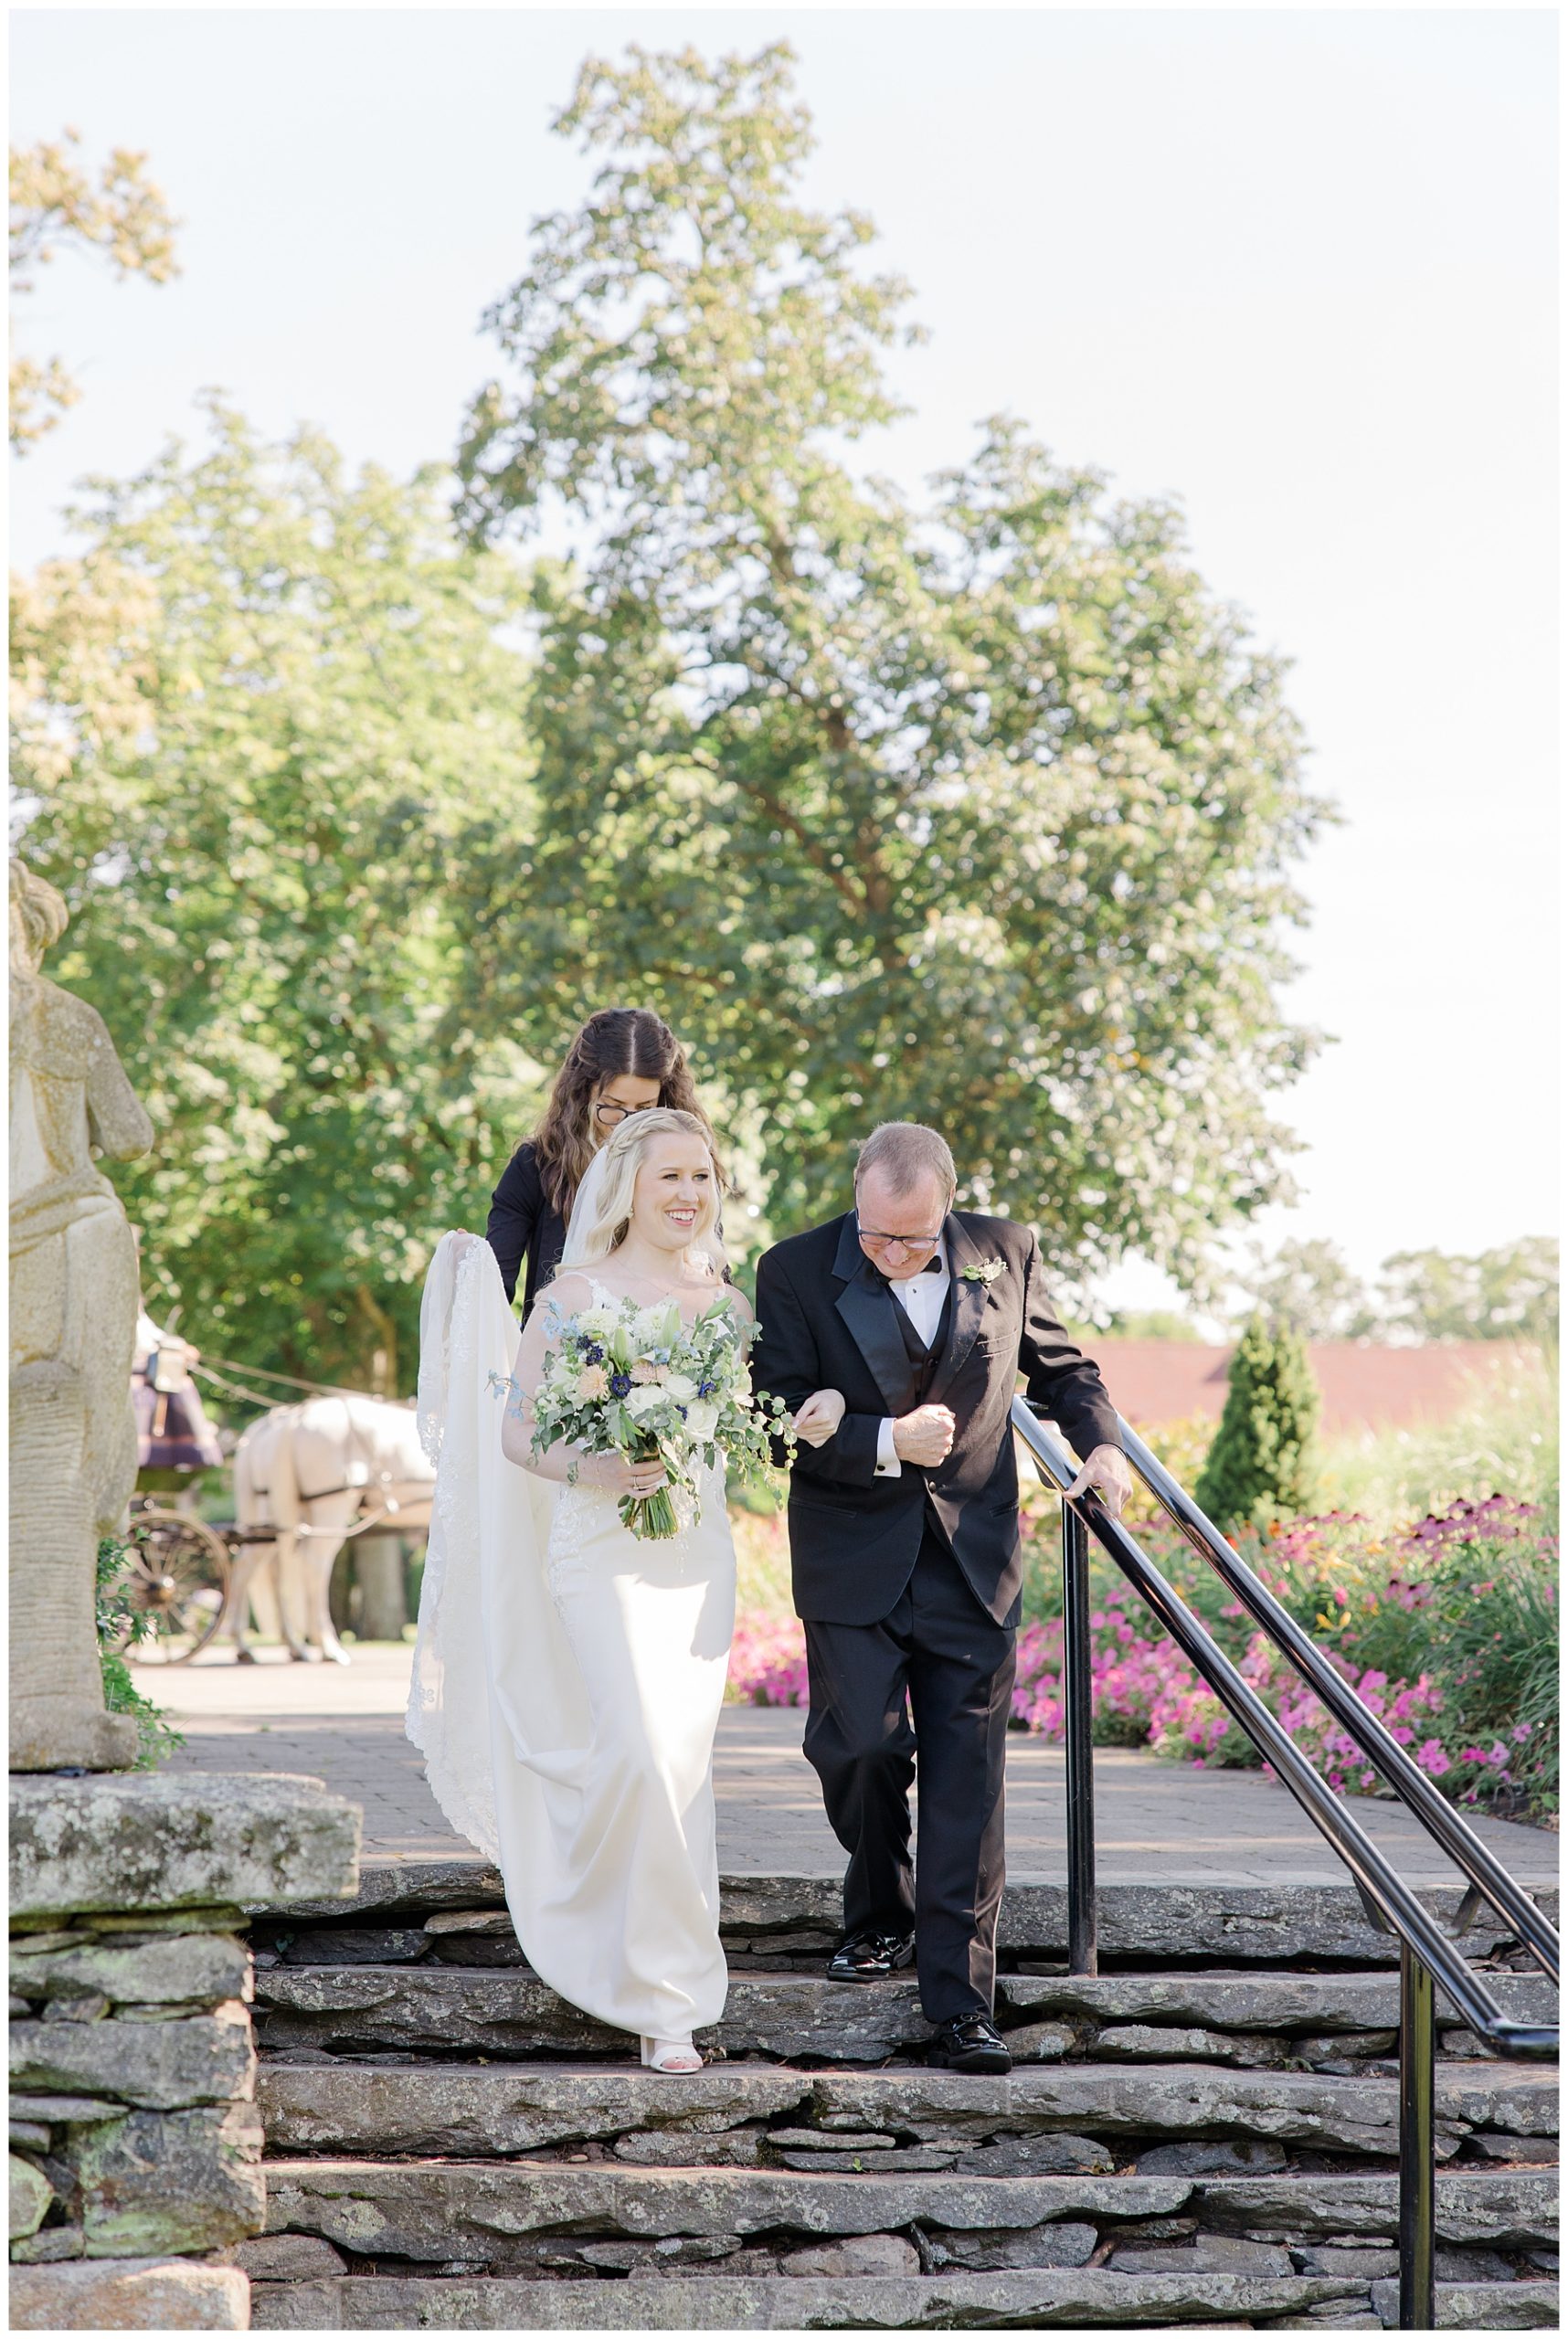 dad walking bride to wedding ceremony